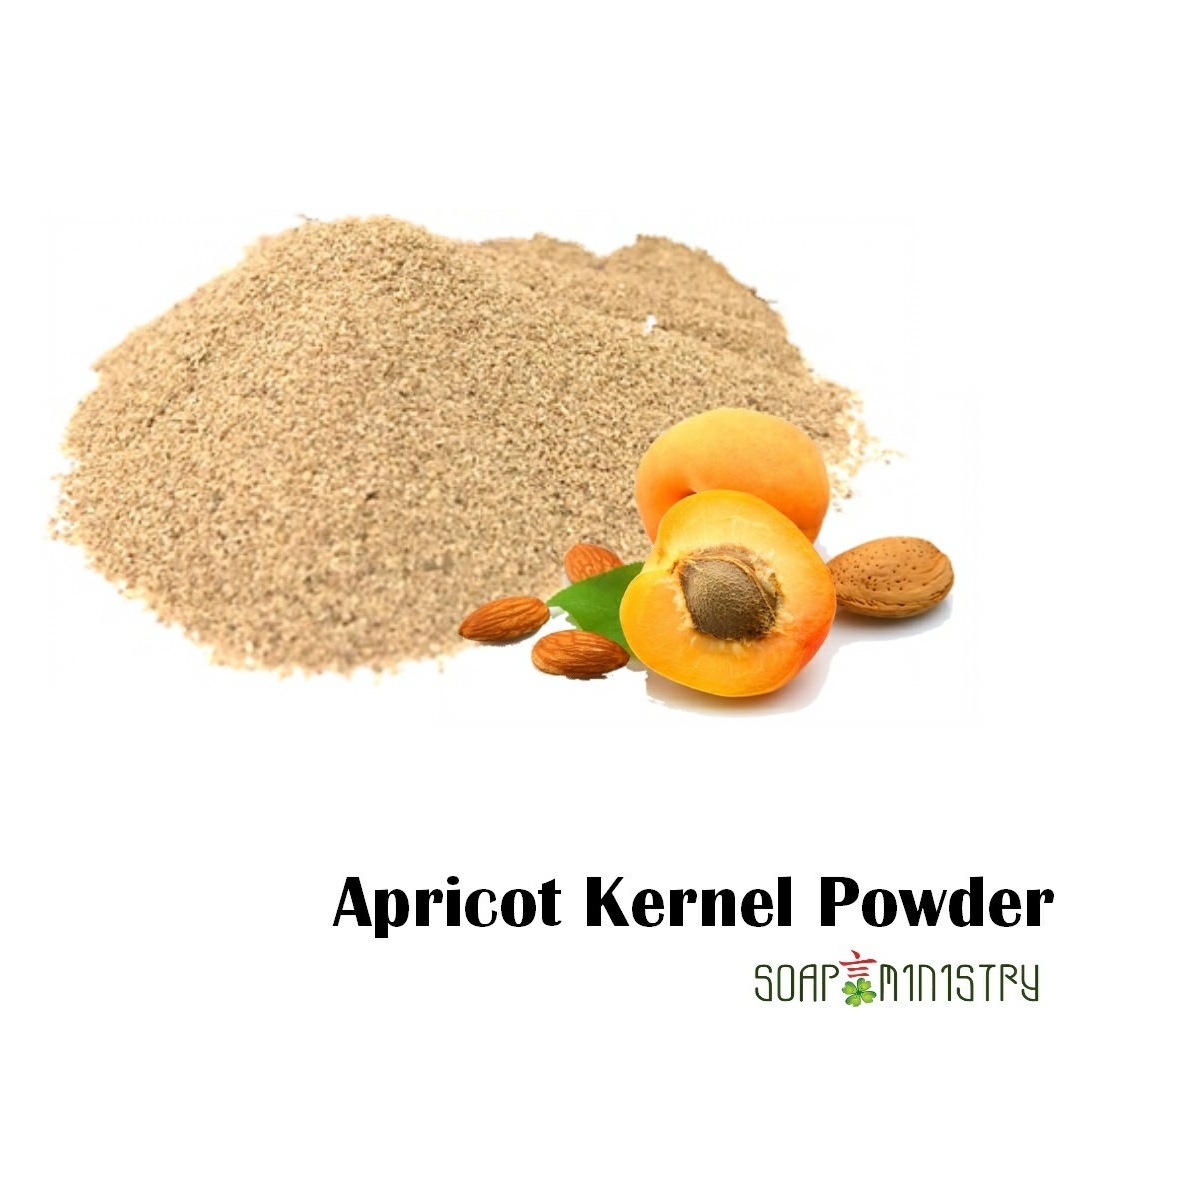 Apricot Kernel Powder 250g